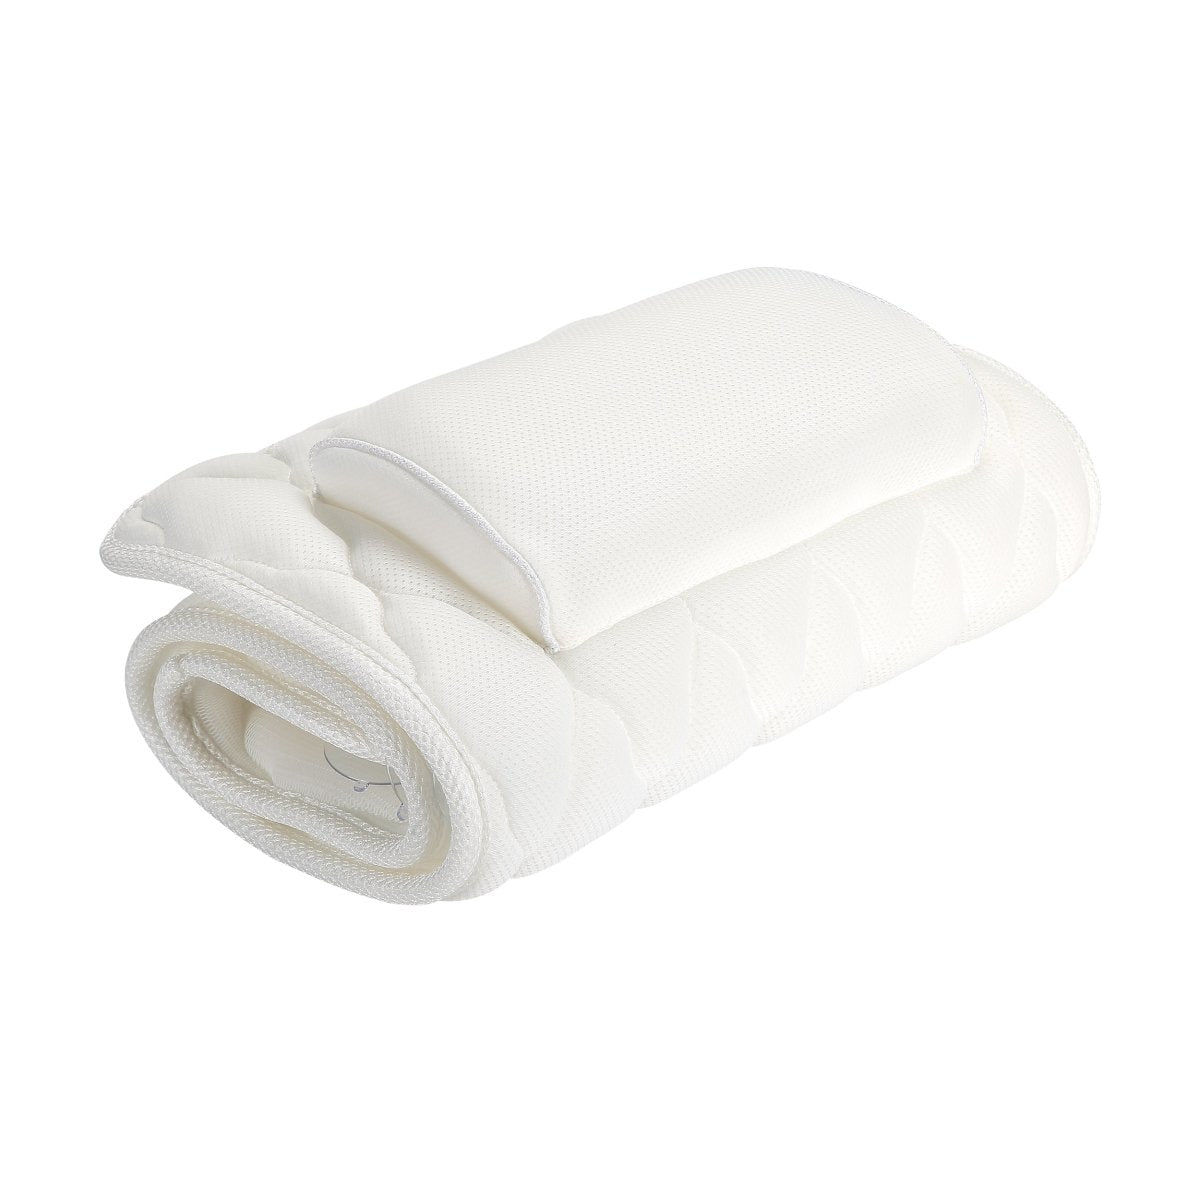 XL Bath Pillow Cushion Mat for Bathtub by Bath Box Australia